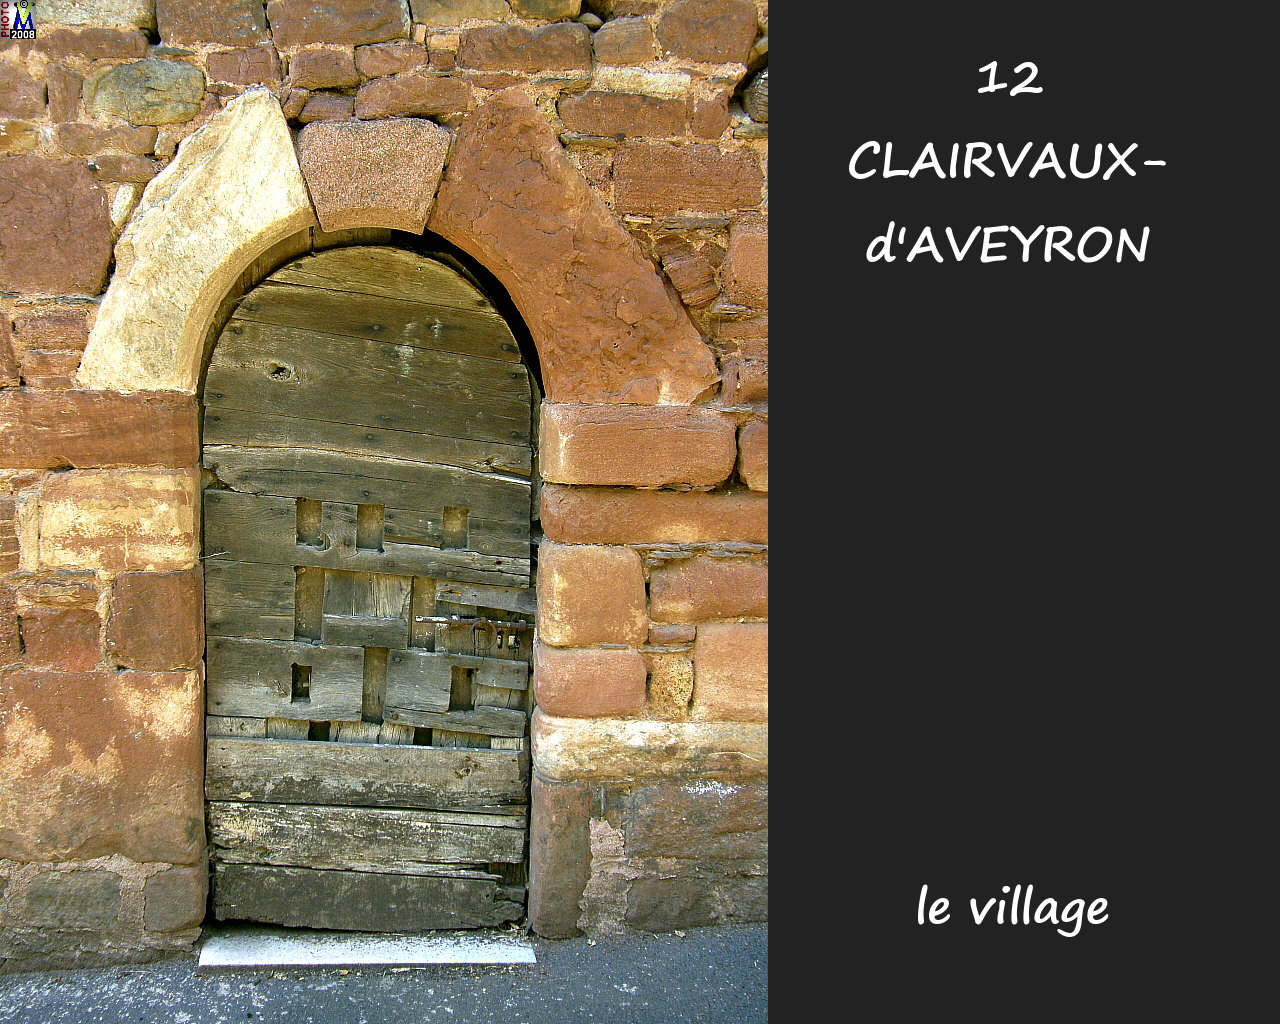 12CLAIRVAUX-AVEYRON_village_126.jpg